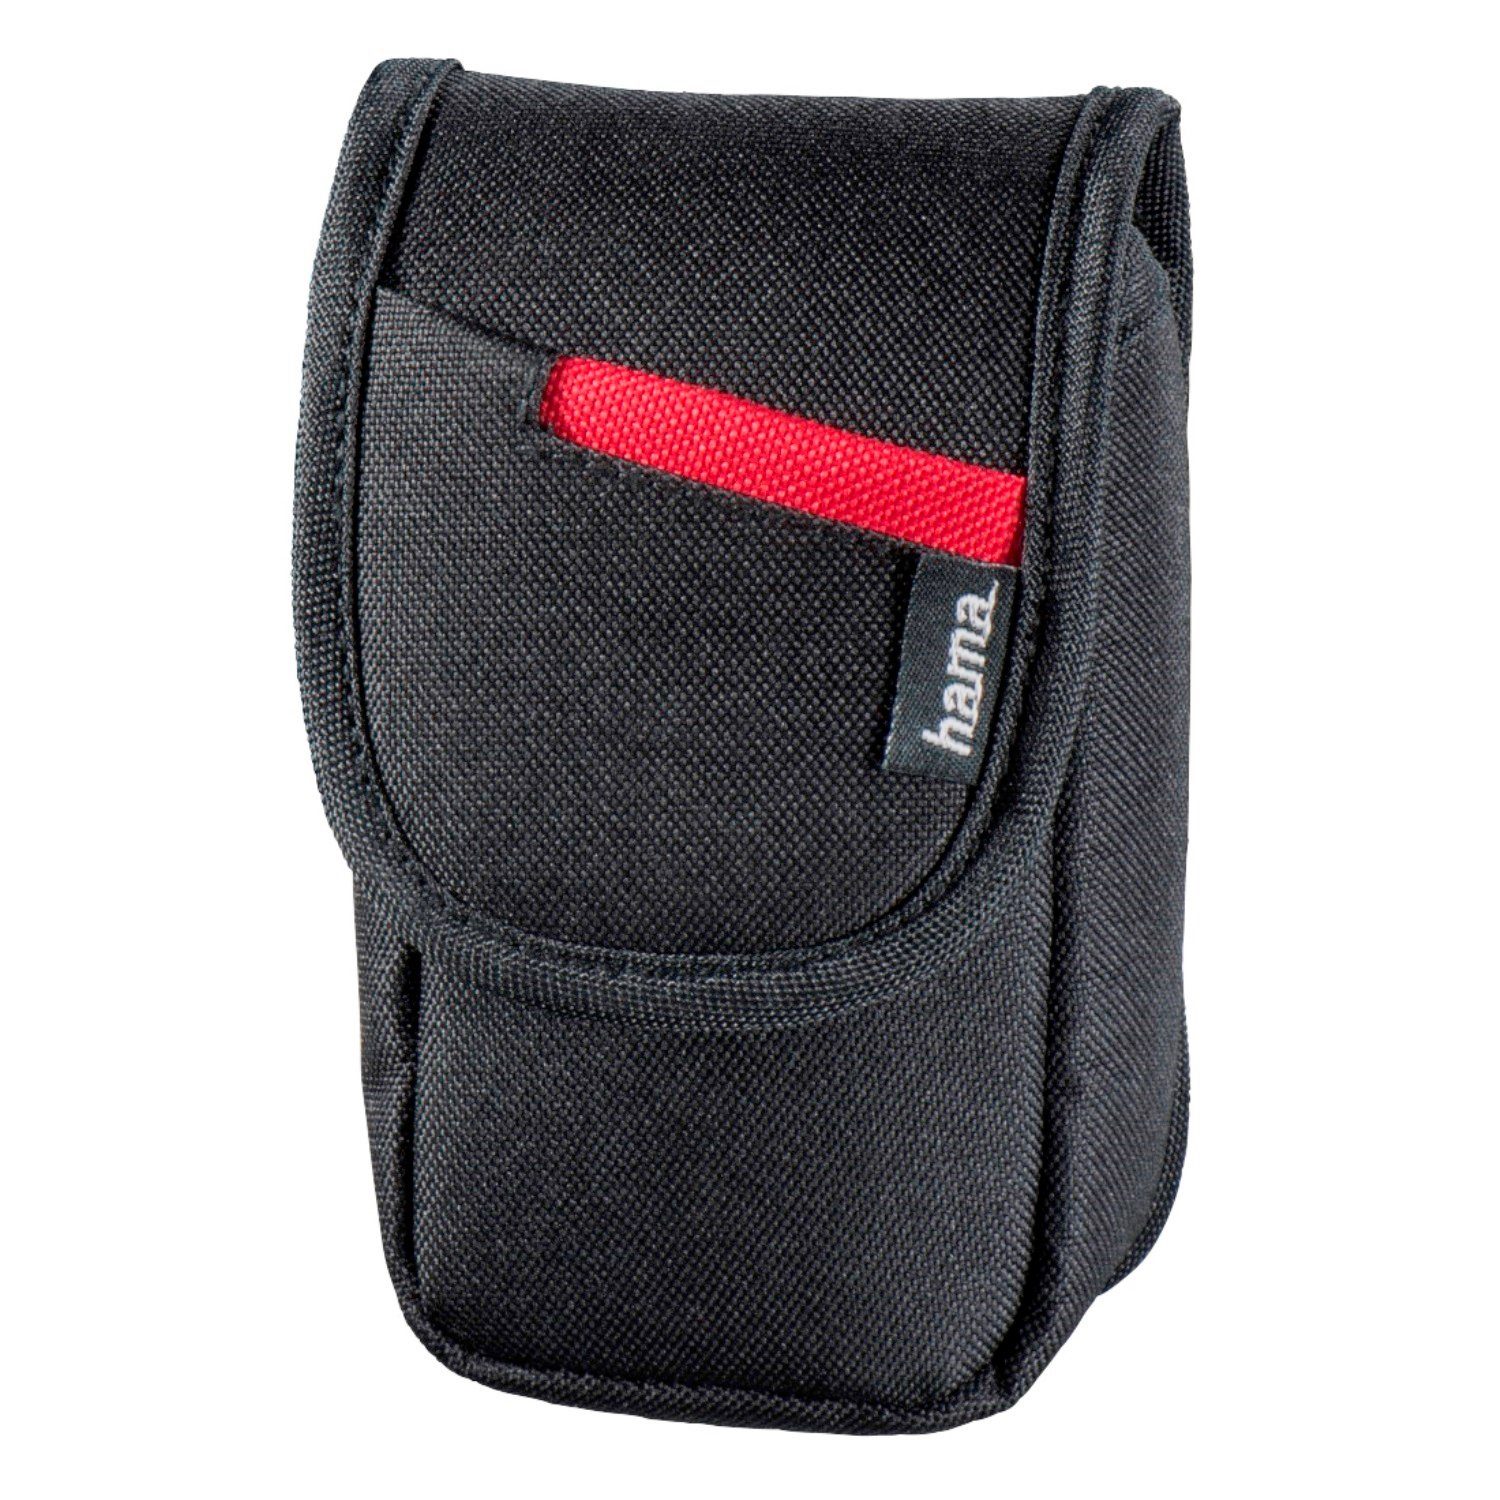 Hama Kameratasche Kamera-Tasche Schutz-Hülle Case Cover, Gürtel-Schlaufe,  Innenfutter, kleines Fach, für Digital-Kamera etc.